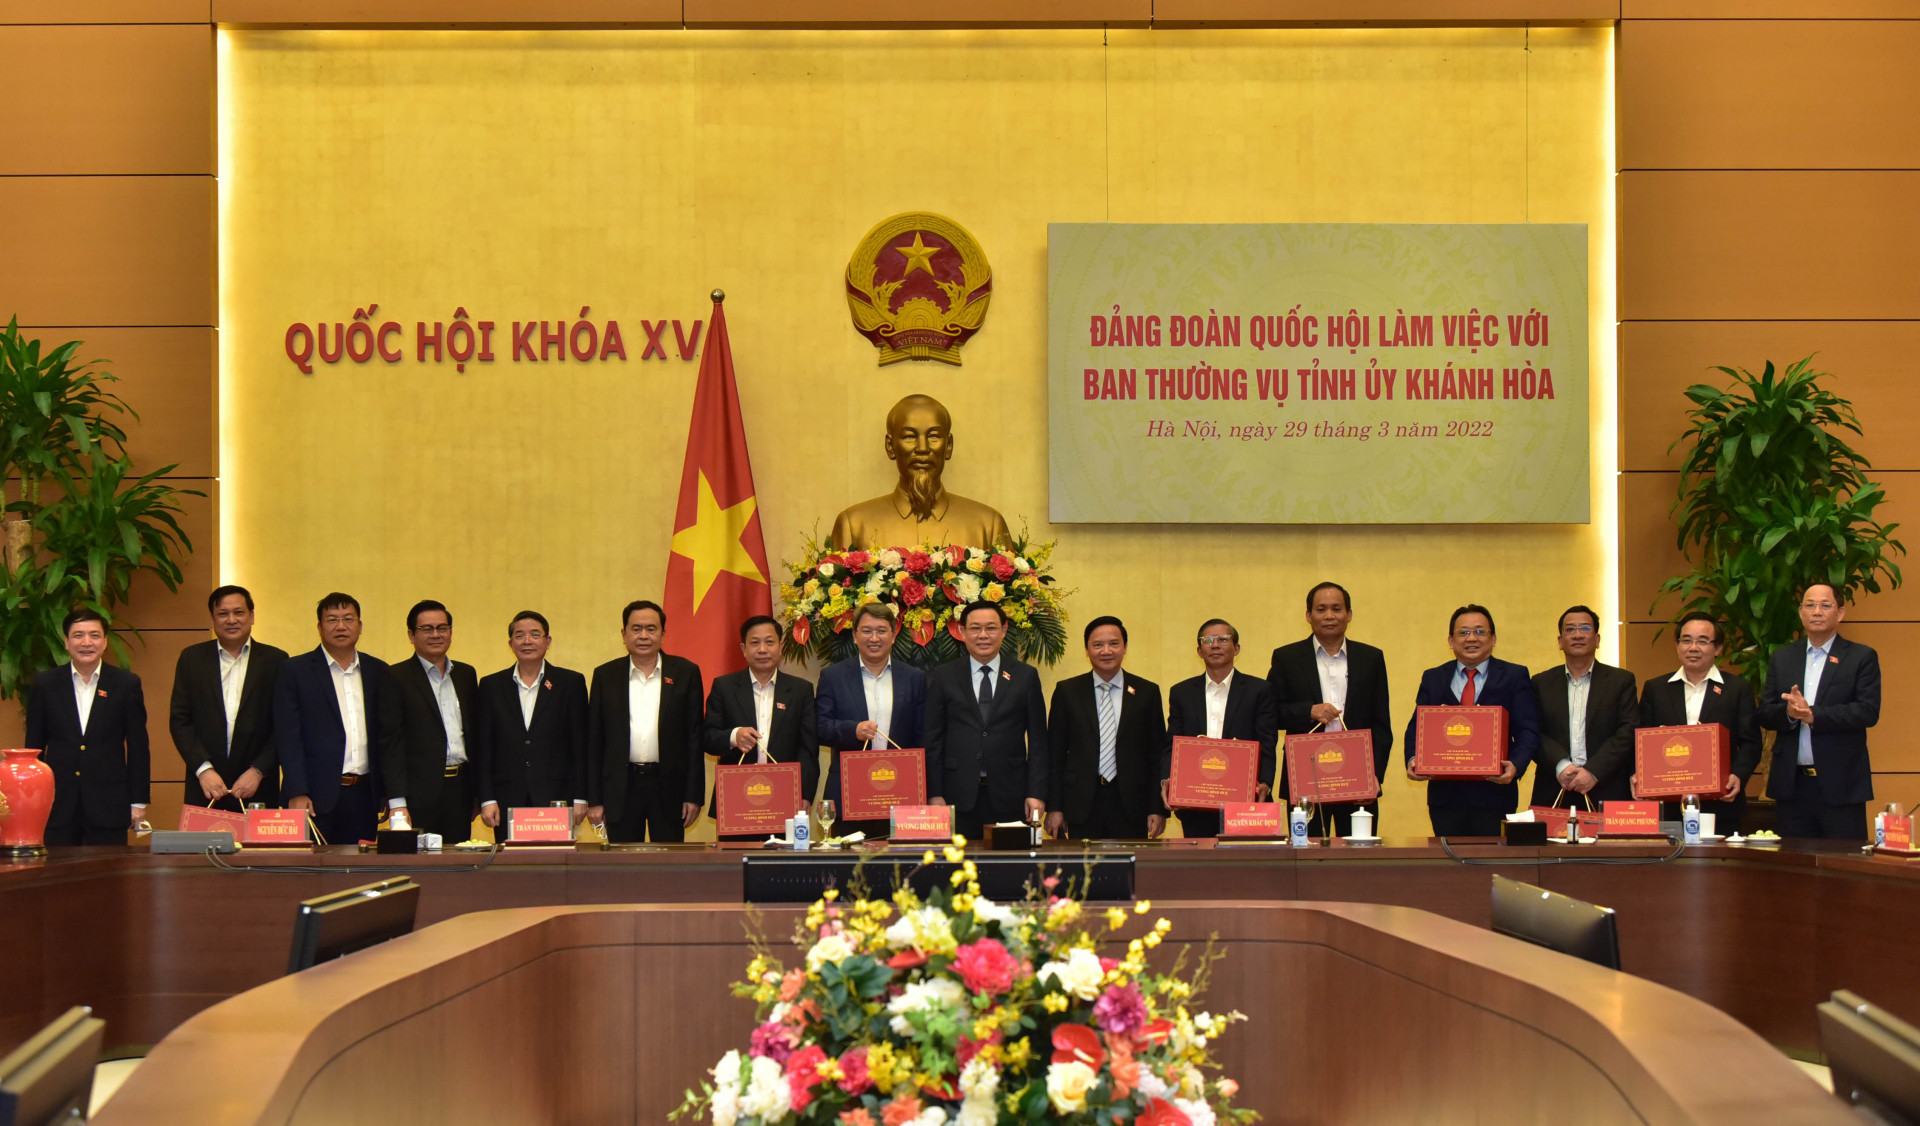 Ban Thường vụ Tỉnh ủy Khánh Hòa chụp ảnh lưu niệm với Chủ tịch Quốc hội